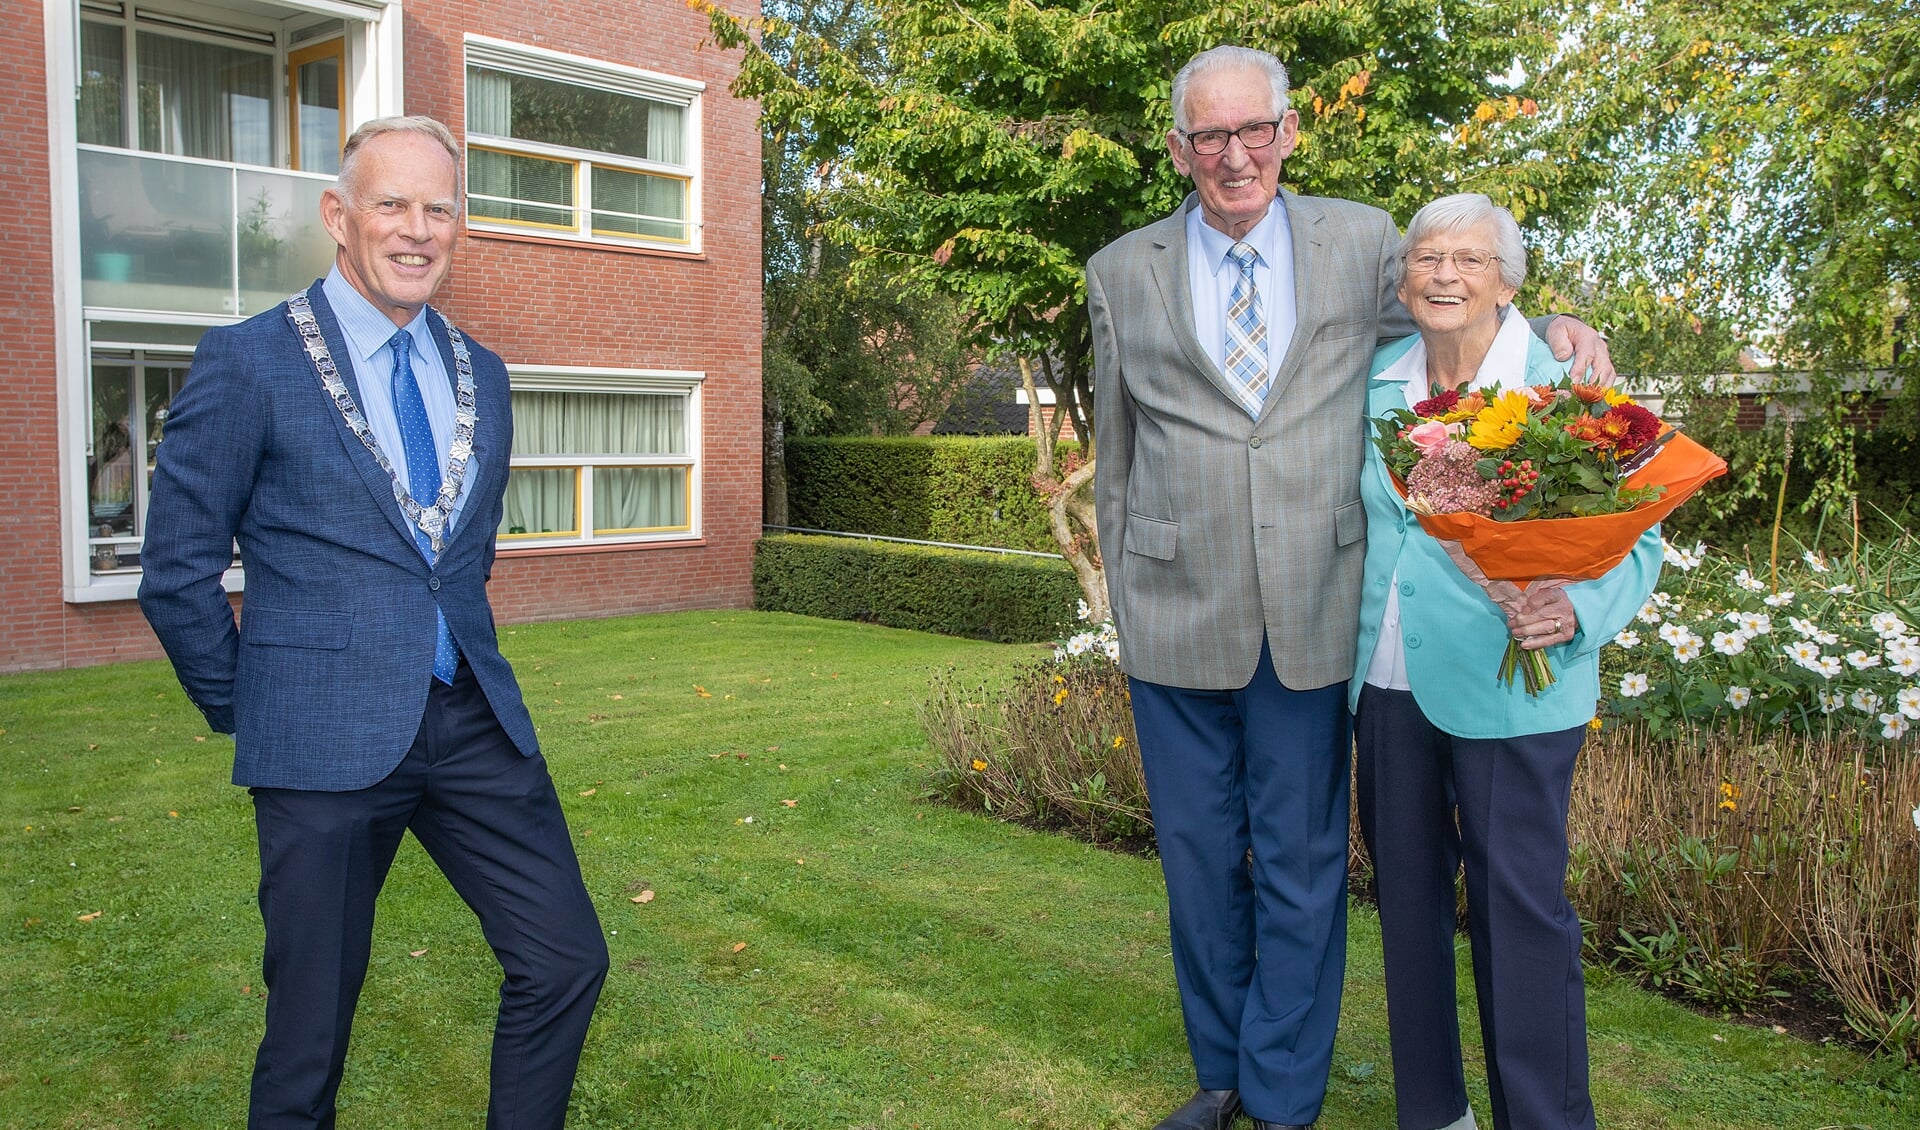 Burgemeester Ter Heegde bracht echtpaar De Gooijer-Slok zijn felicitaties en een bos bloemen.